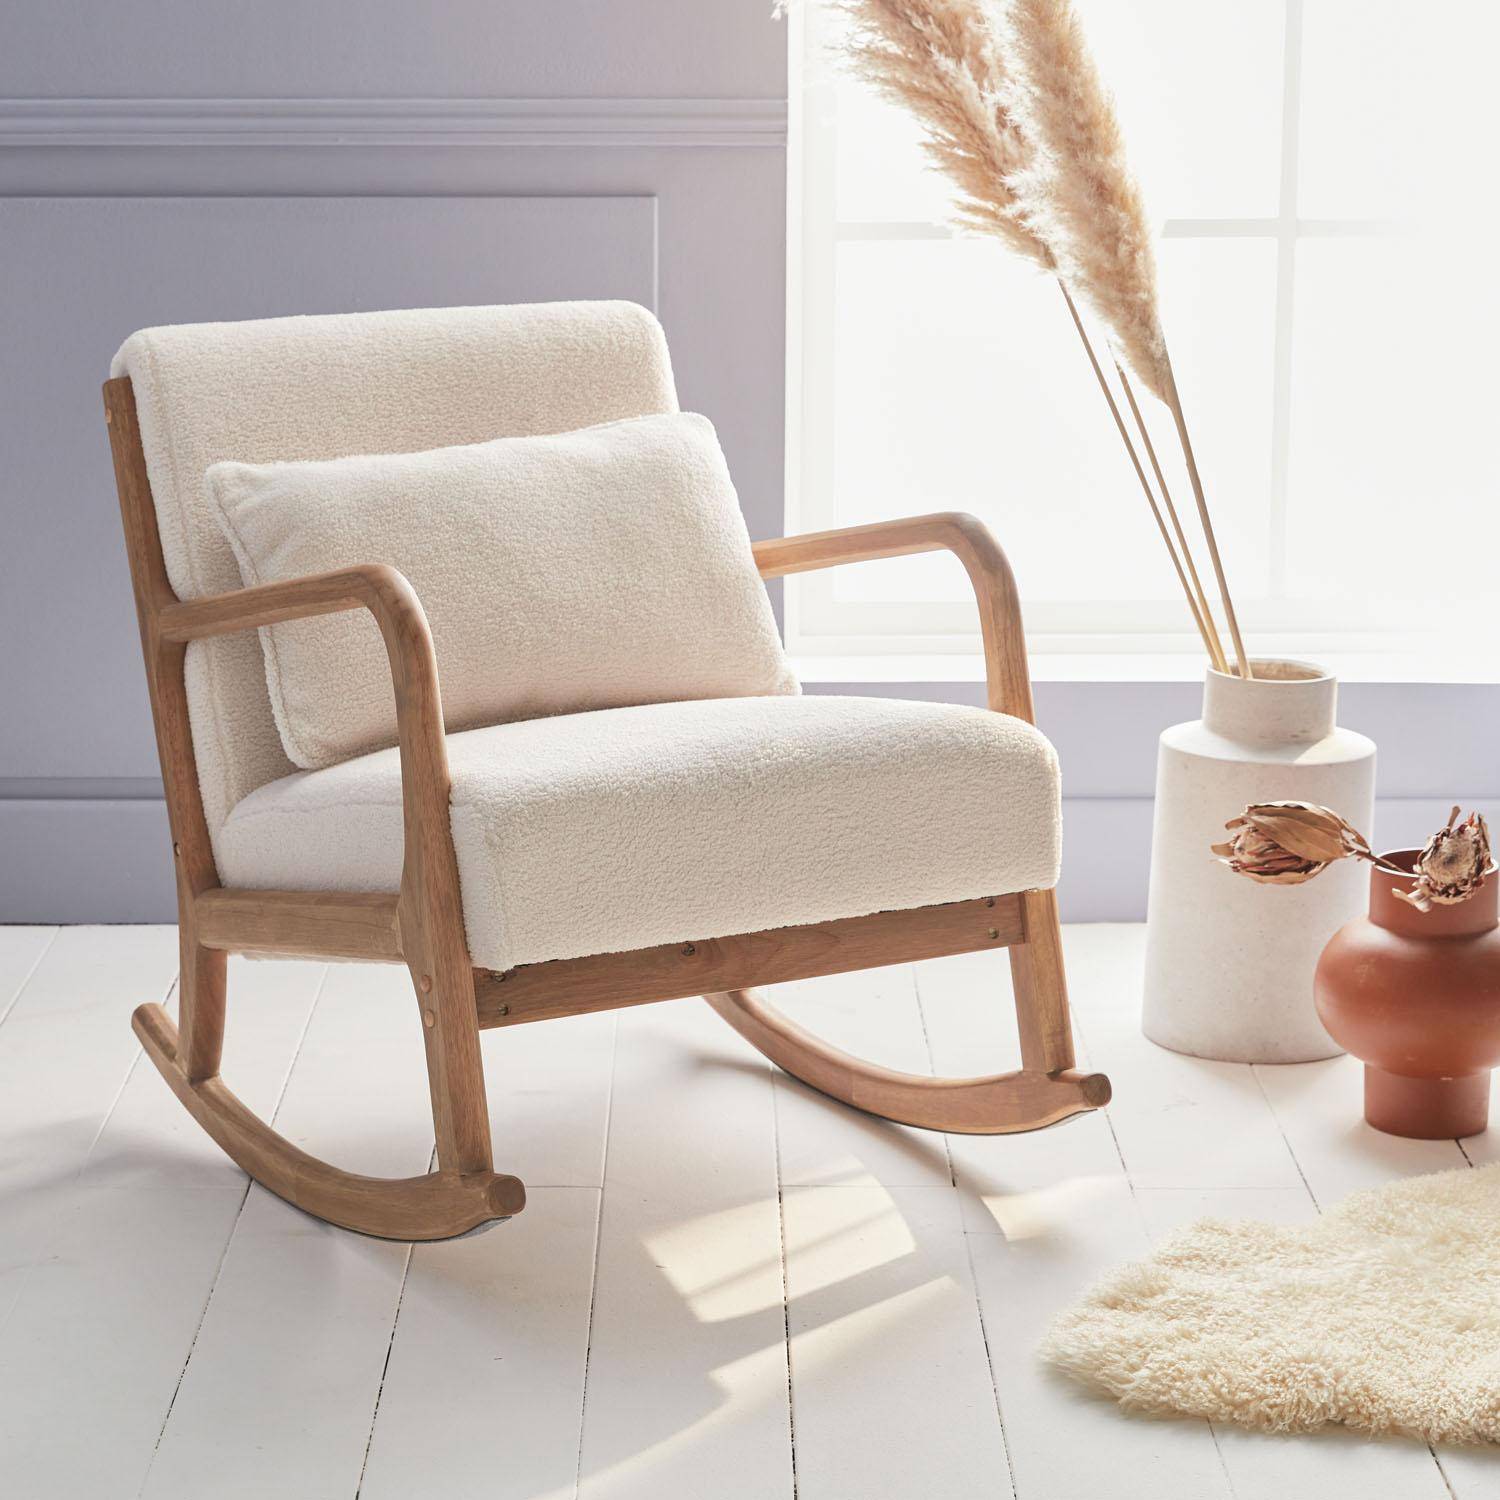 Fauteuil à bascule design en bois et tissu, bouclettes blanches, 1 place, rocking chair scandinave Photo1